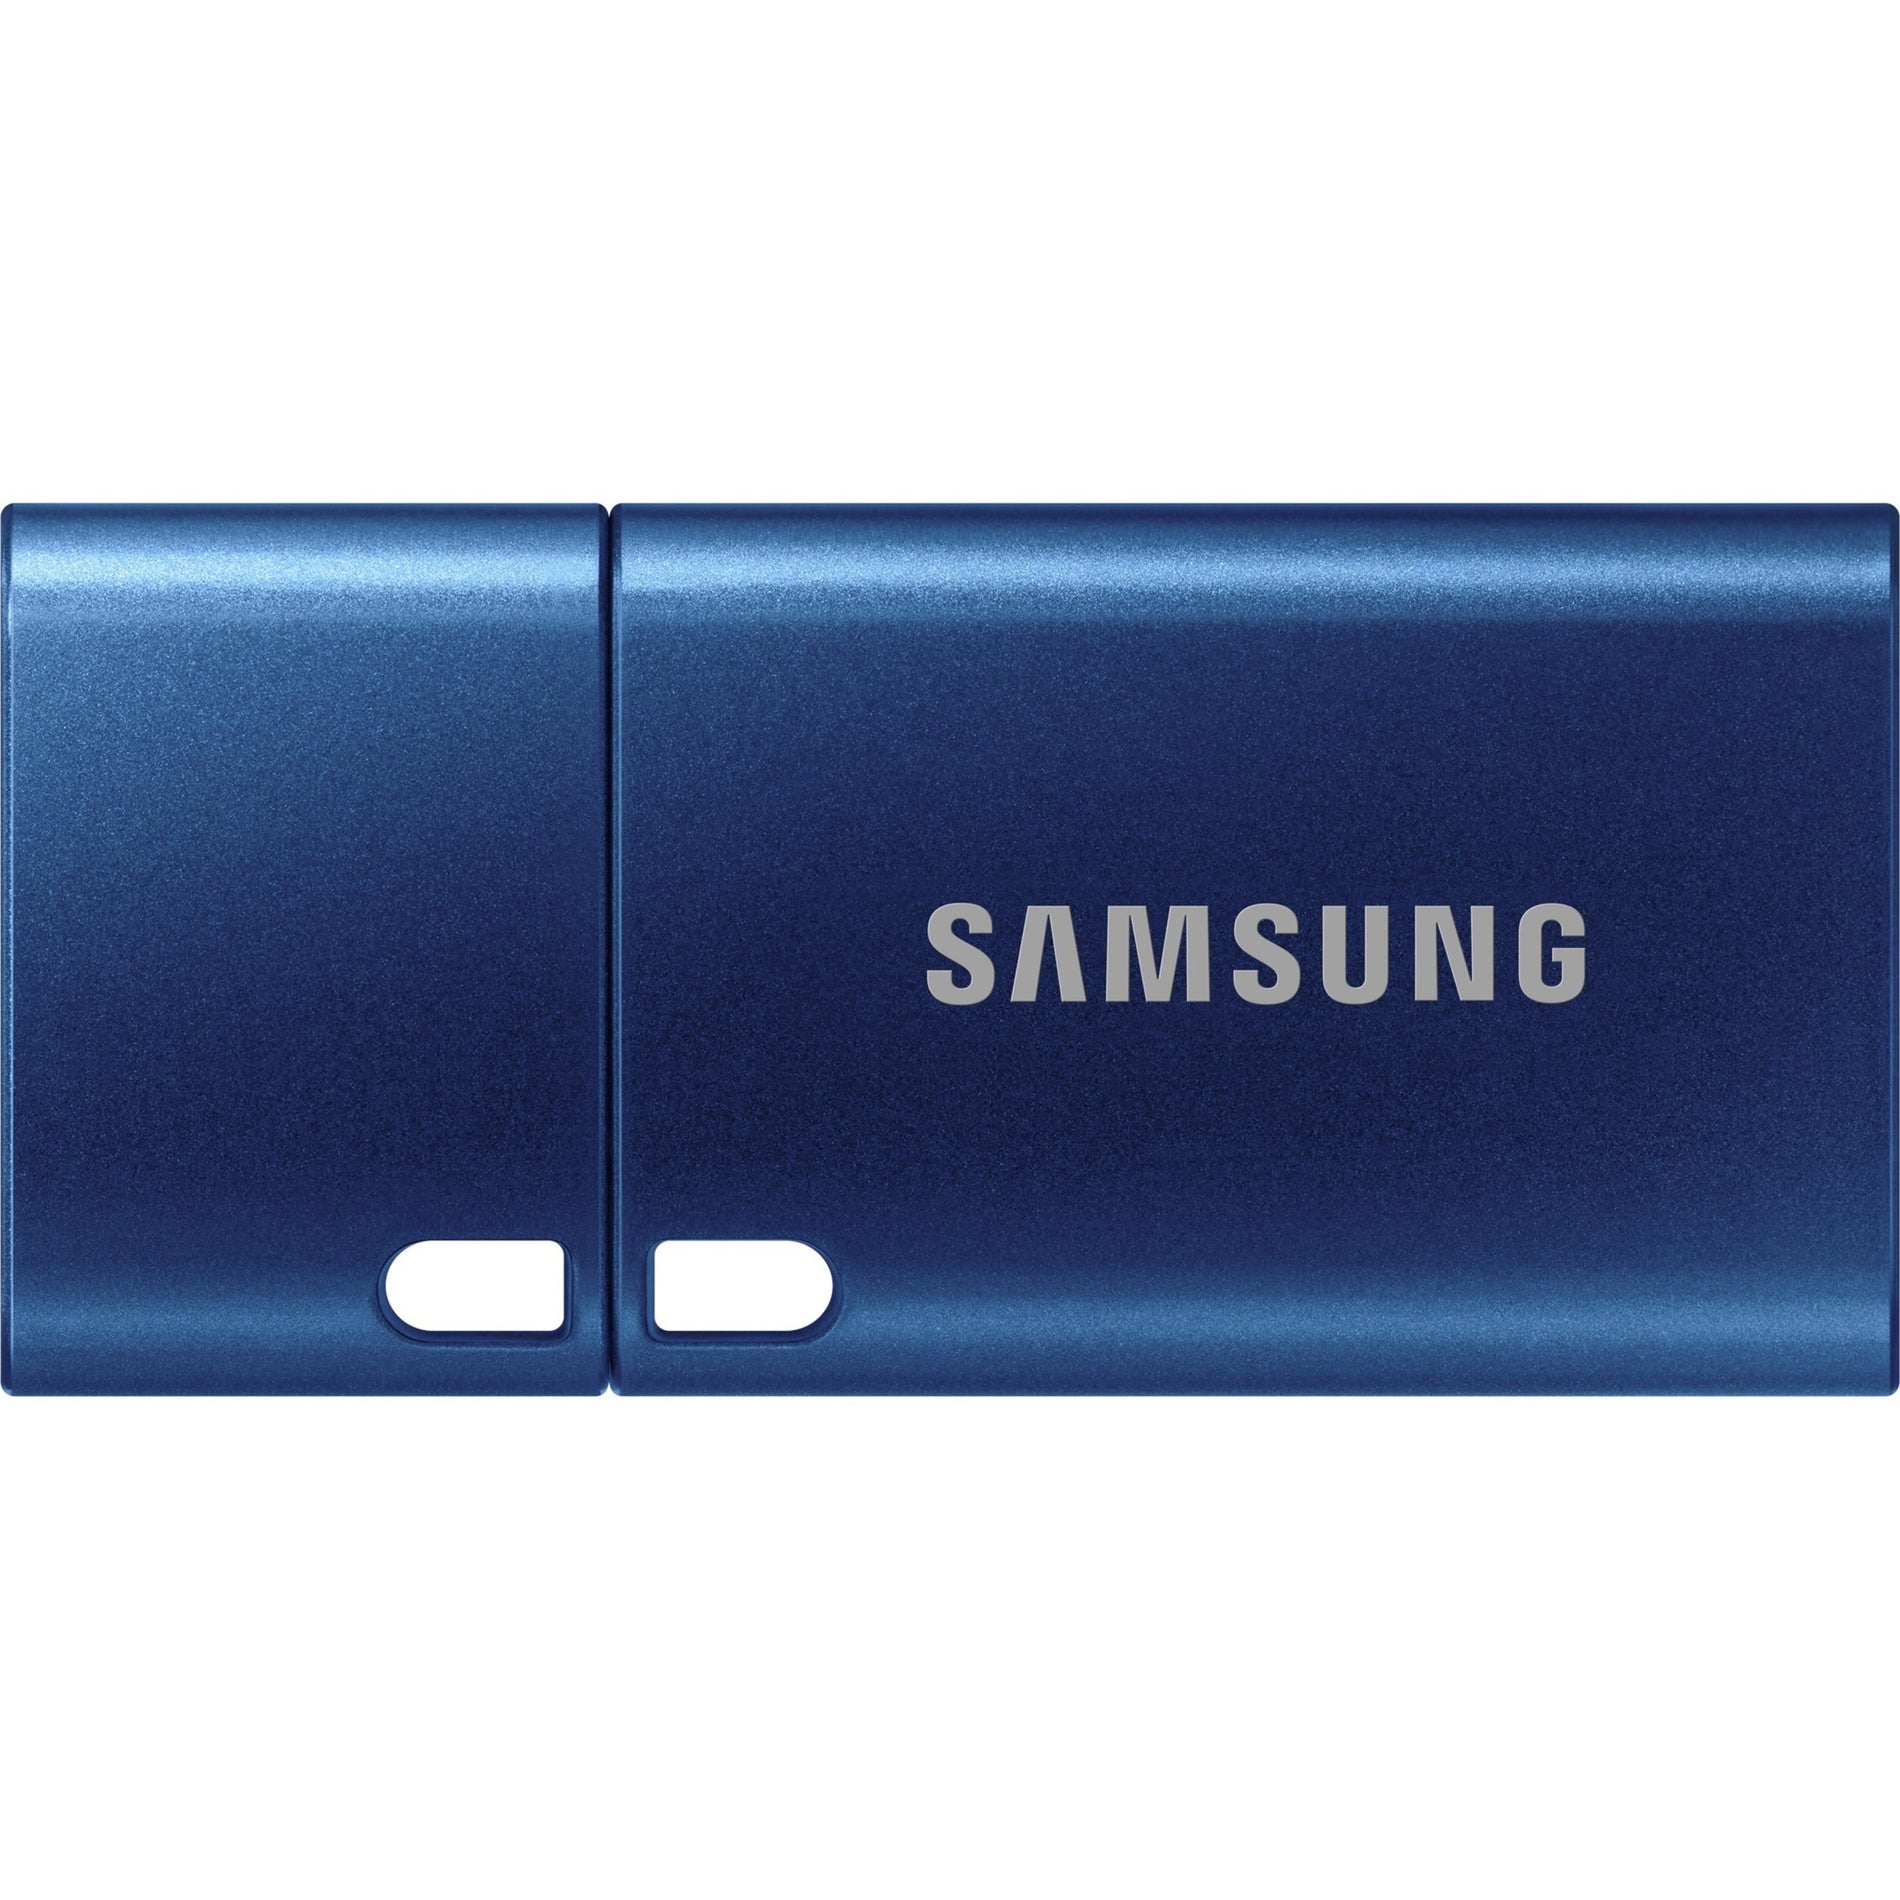 Samsung Type-C 256GB USB 3.2 Flash Drive (MUF-256DA/AM)